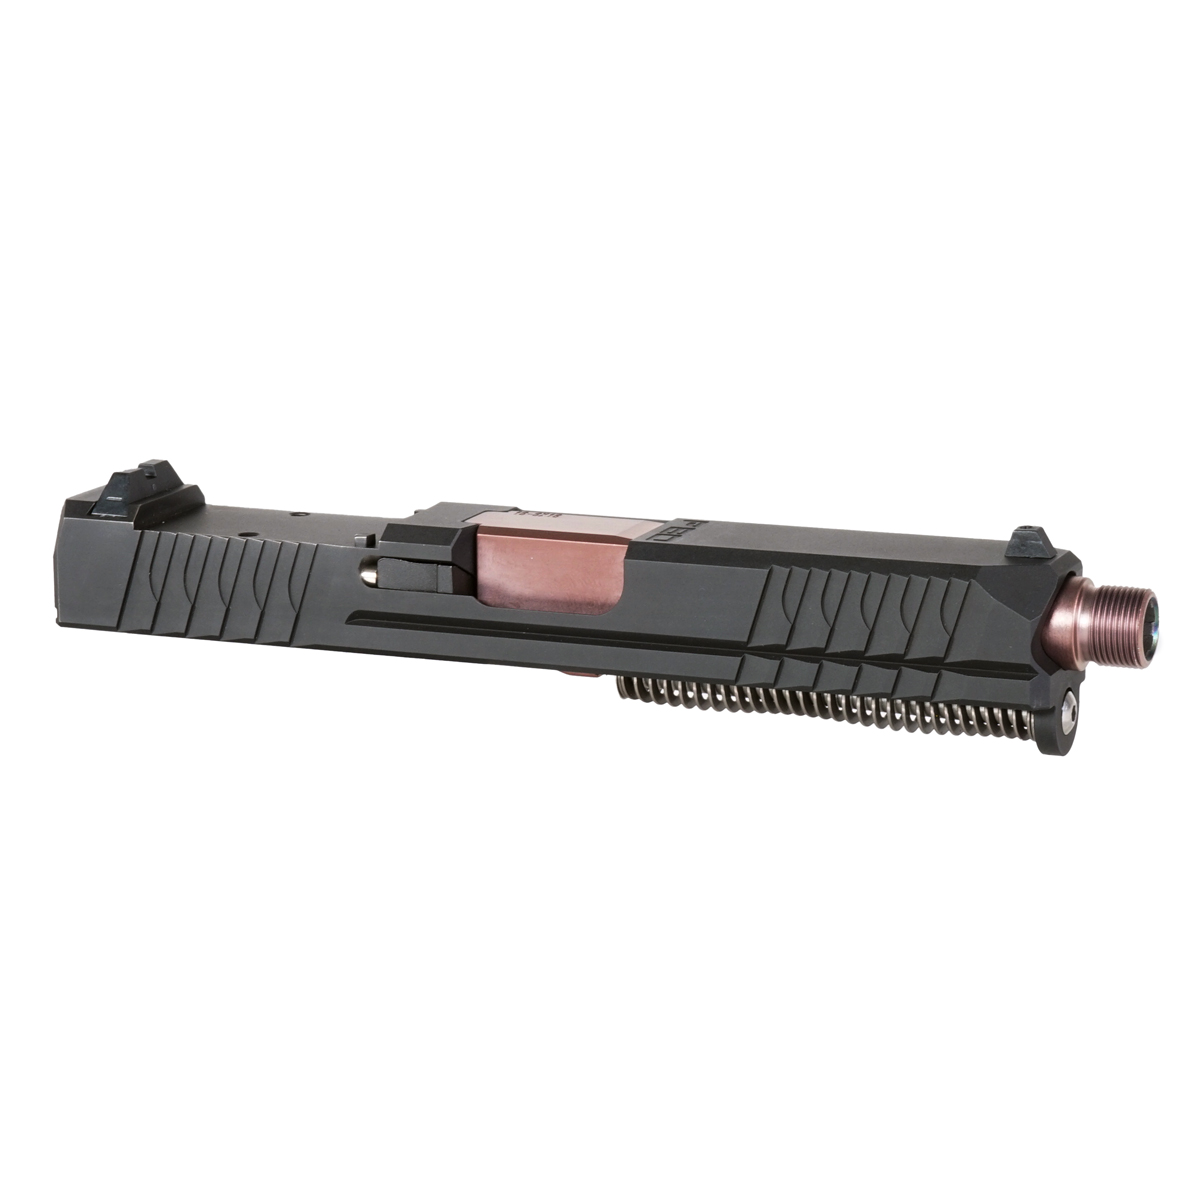 DTT 'Catan' 9mm Complete Slide Kit - Glock 19 Gen 1-3 Compatible